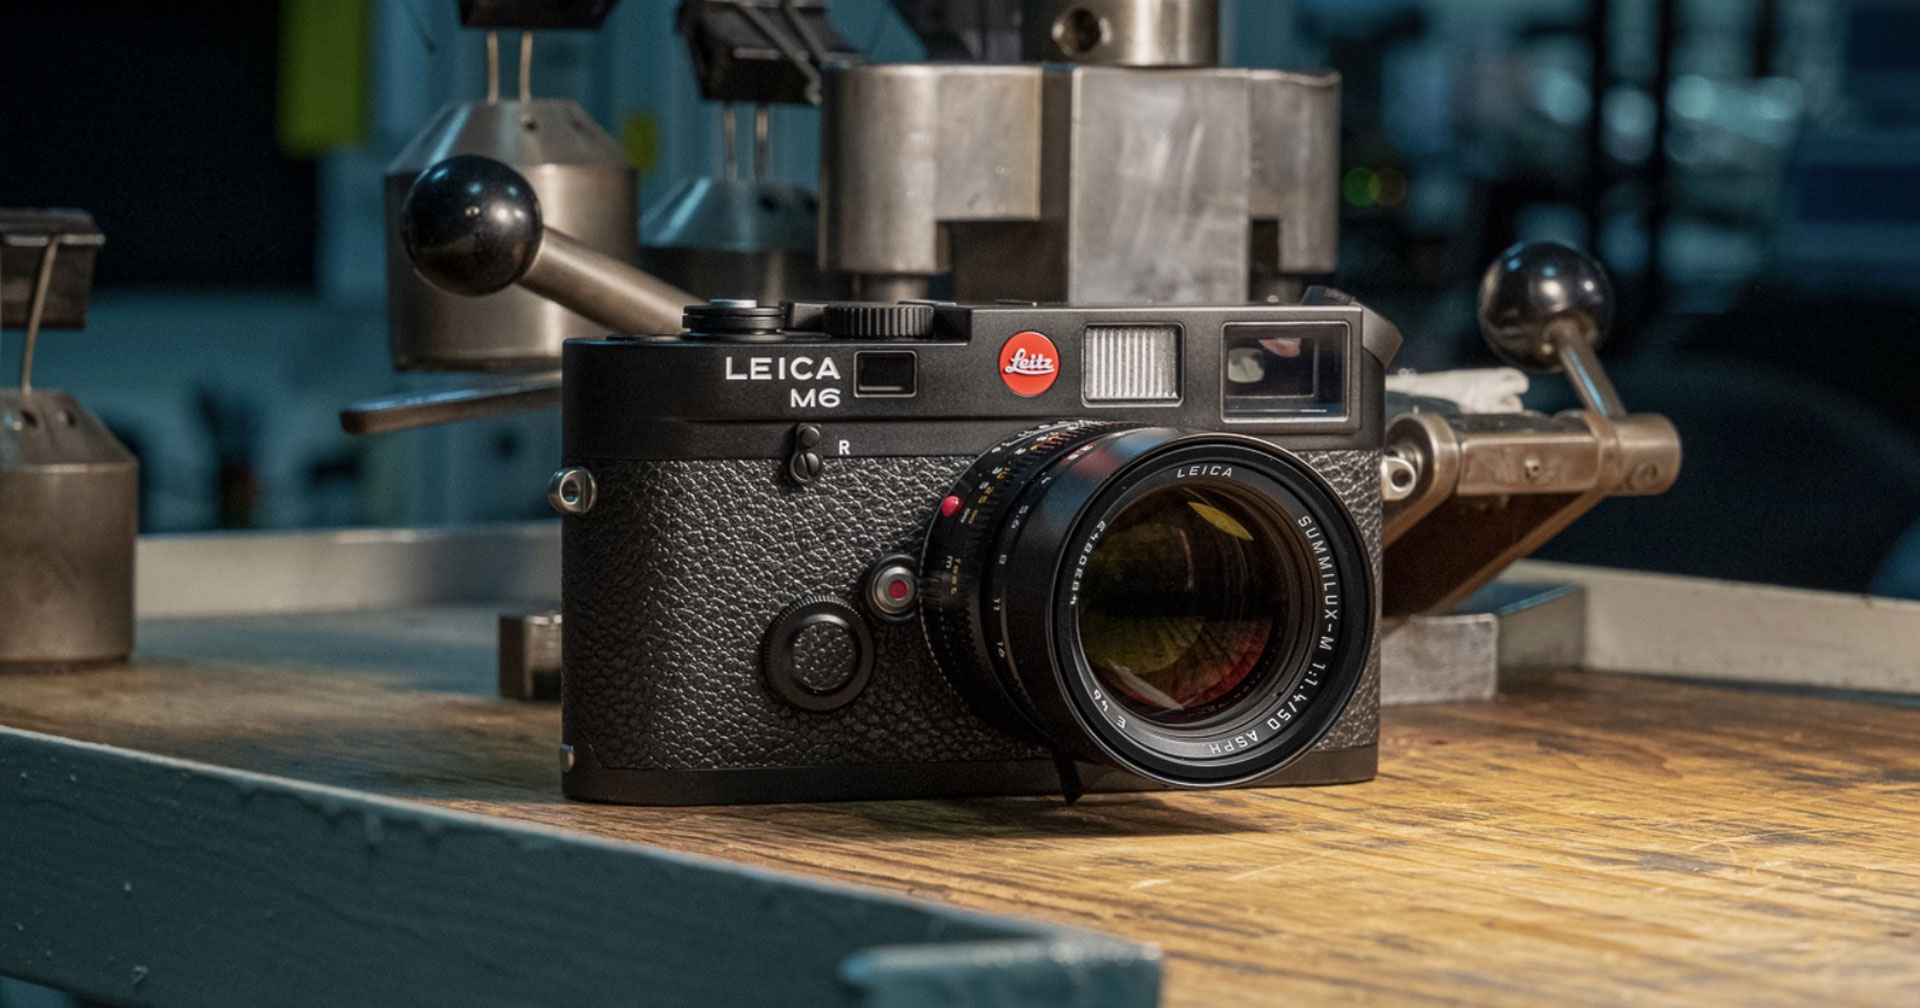 กลับมาอีกครั้ง! Leica M6 กล้องฟิล์ม Rangefinder หรูยอดฮิตตลอดการ กับสเปกใหม่อัปเกรดบางส่วนมาจากรุ่น MP